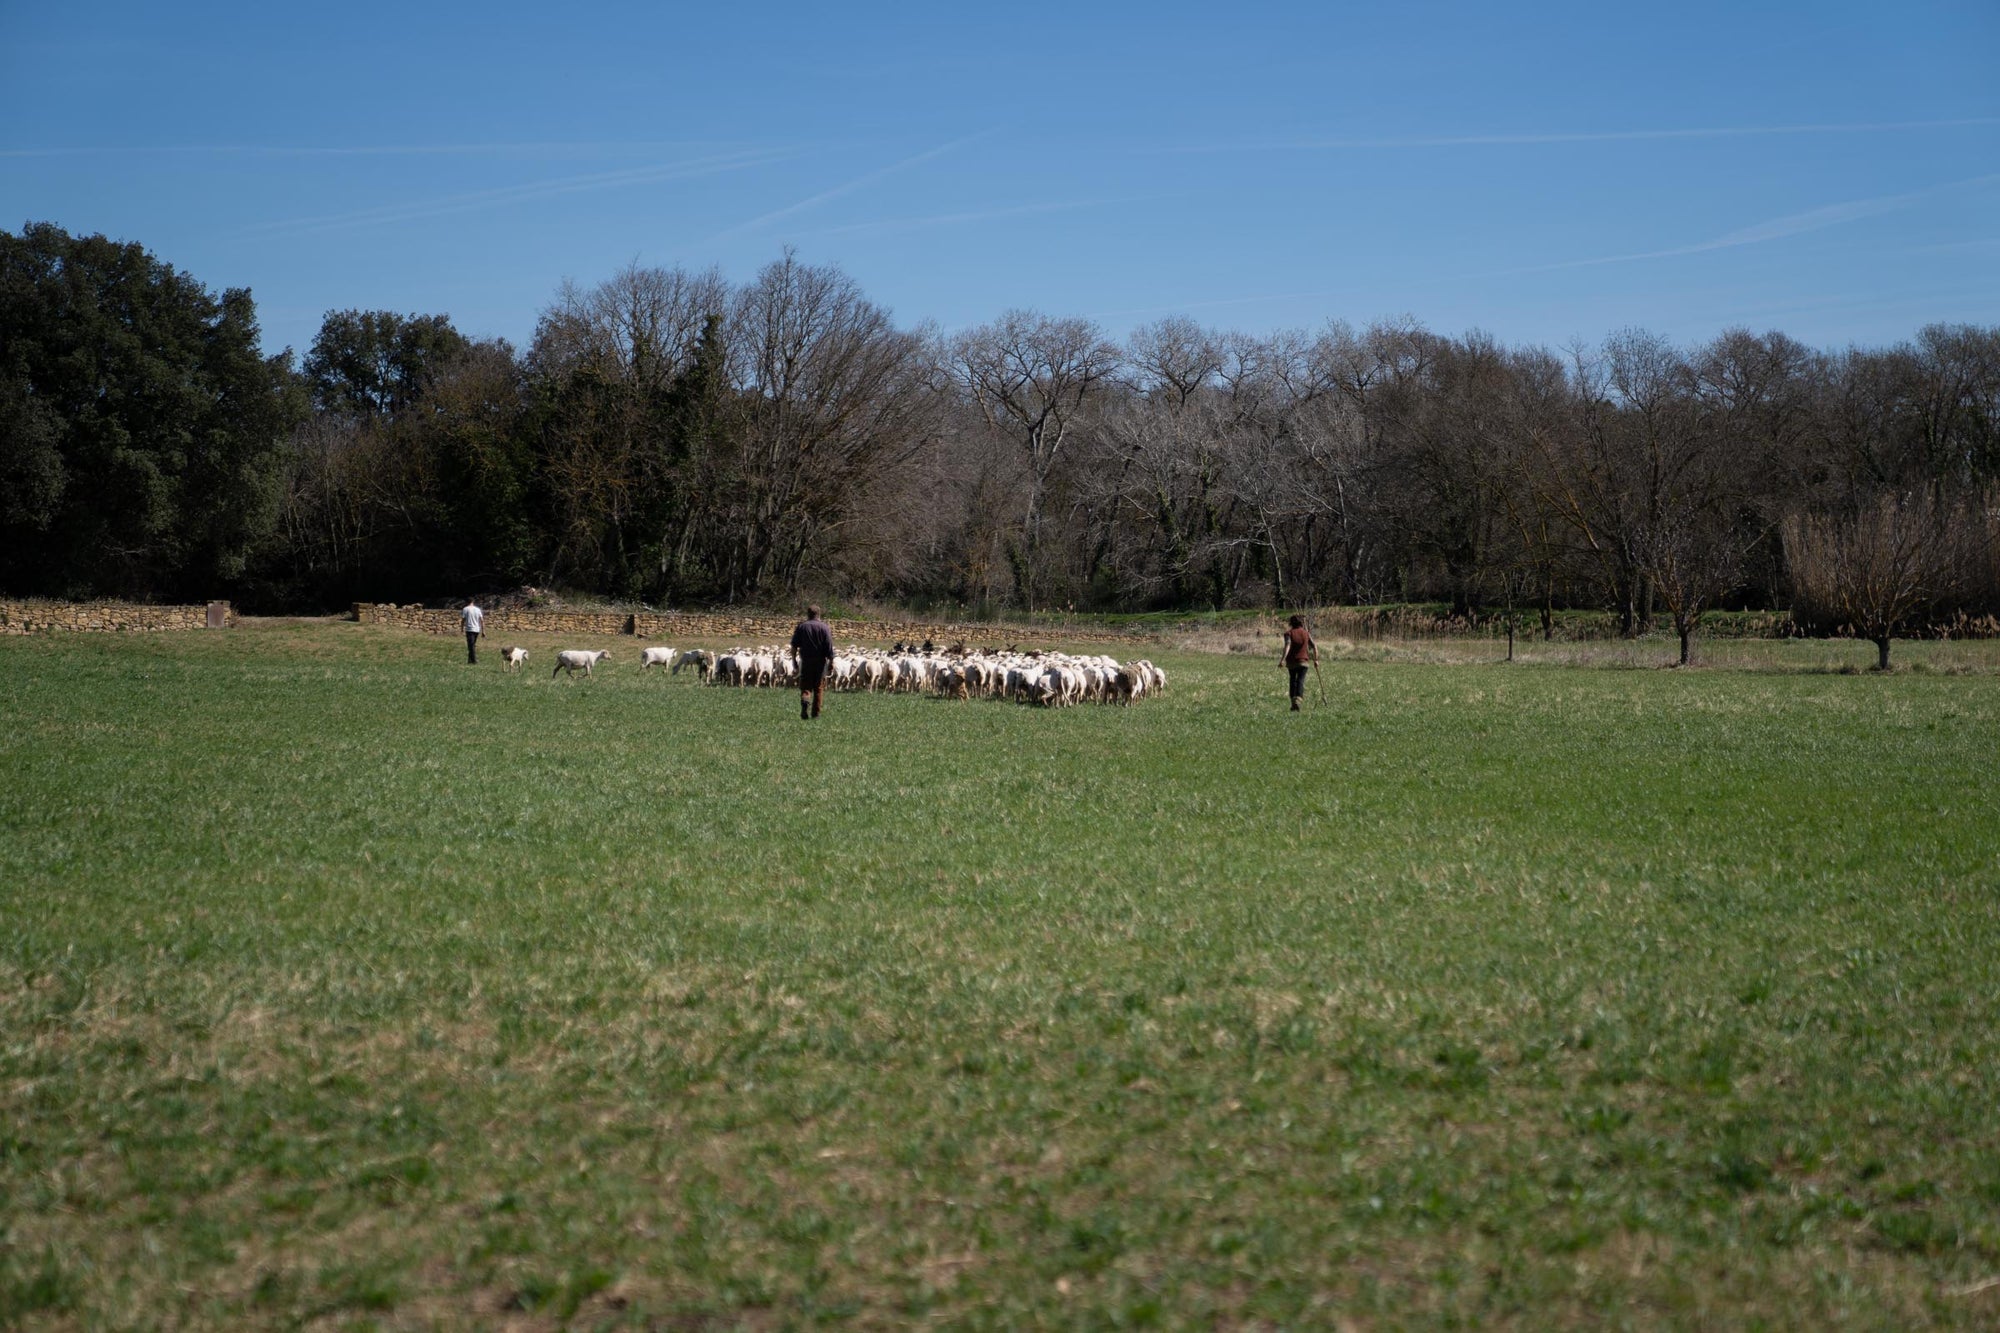 A shepherd tending to her flock of Merino d'Arles sheep in a rural pasture.